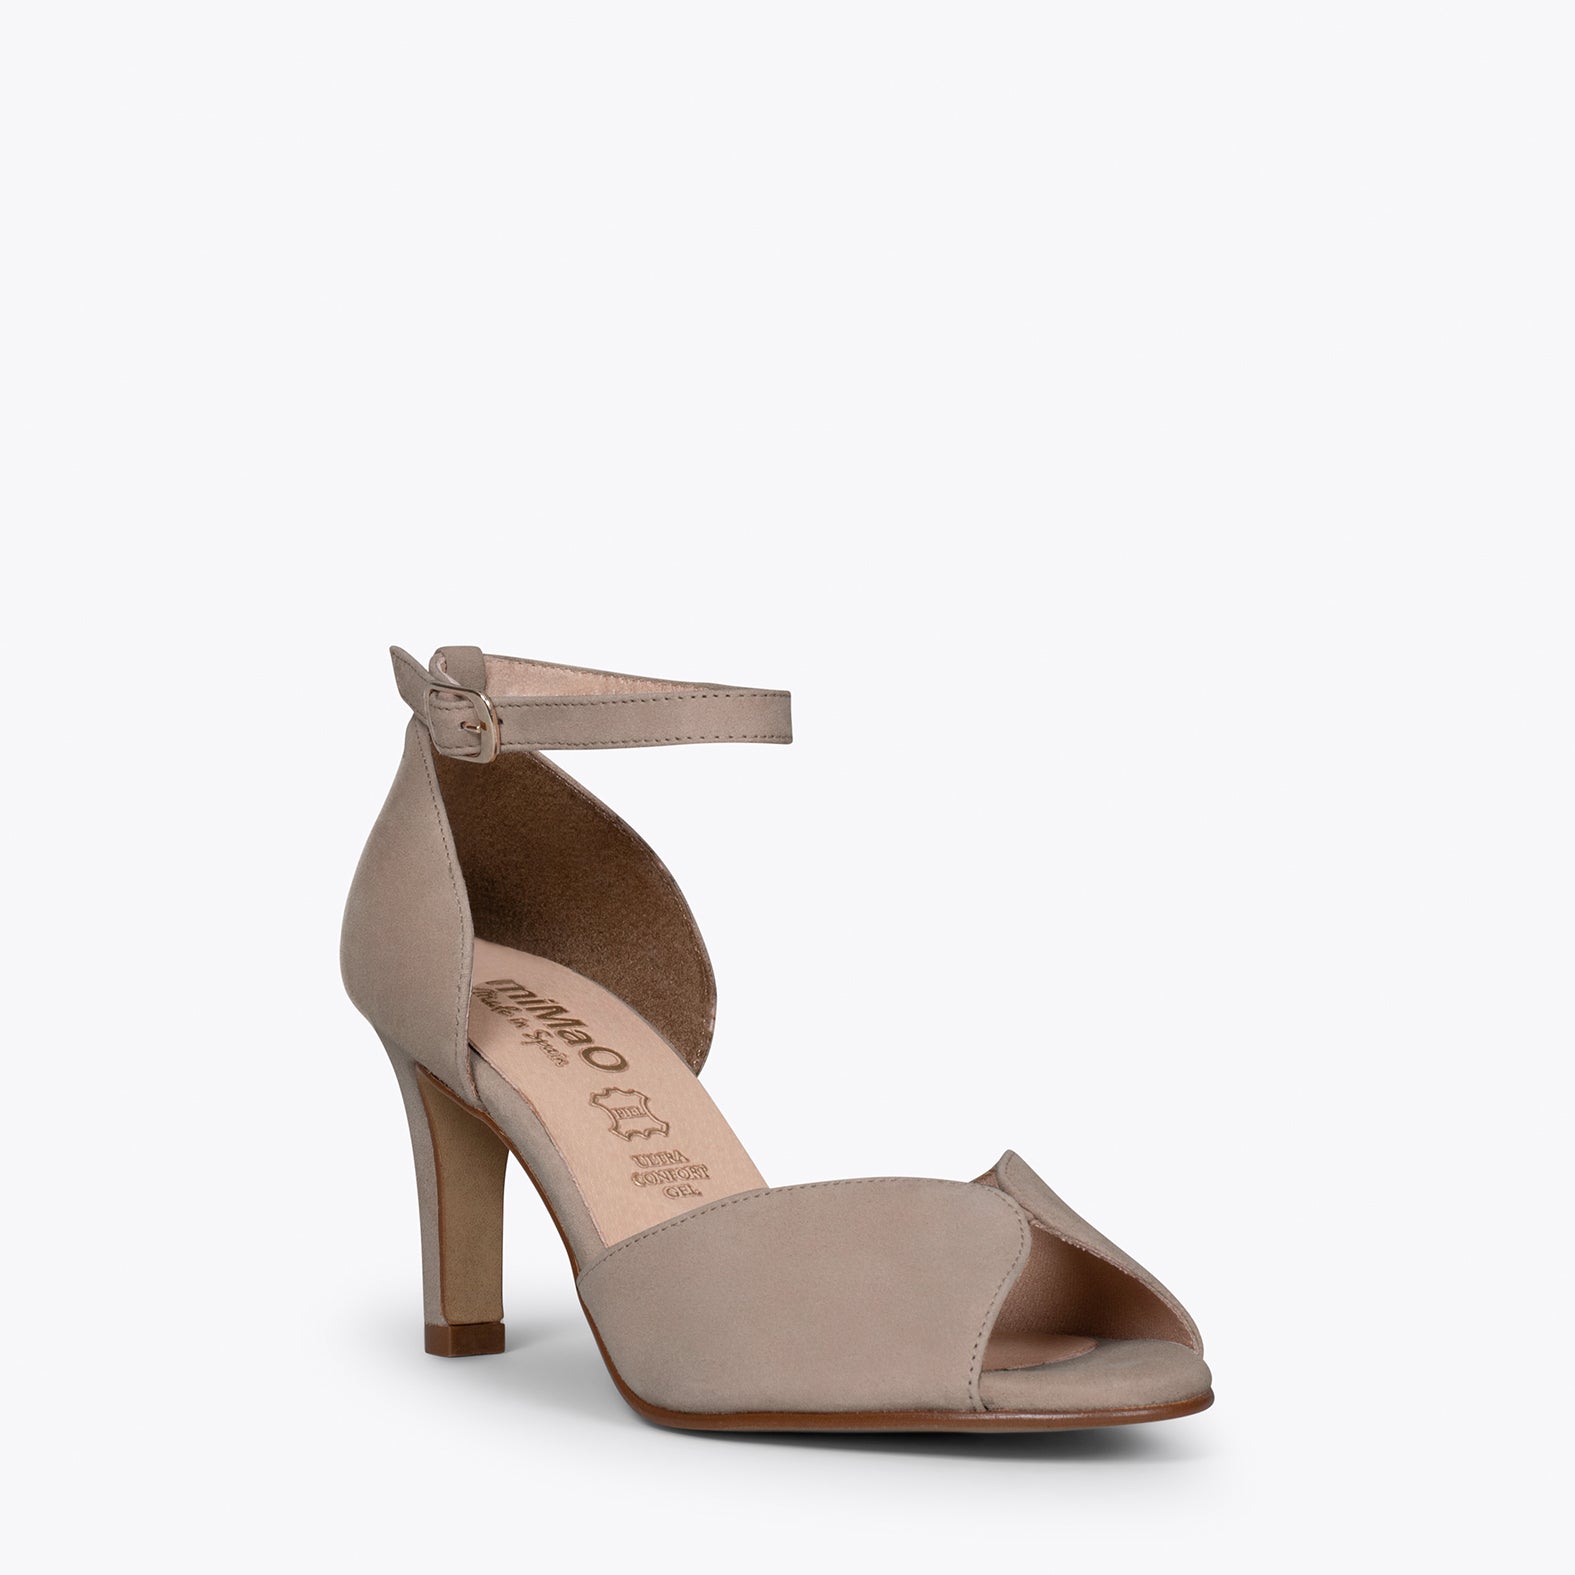 PETAL – TAUPE high heel sandal